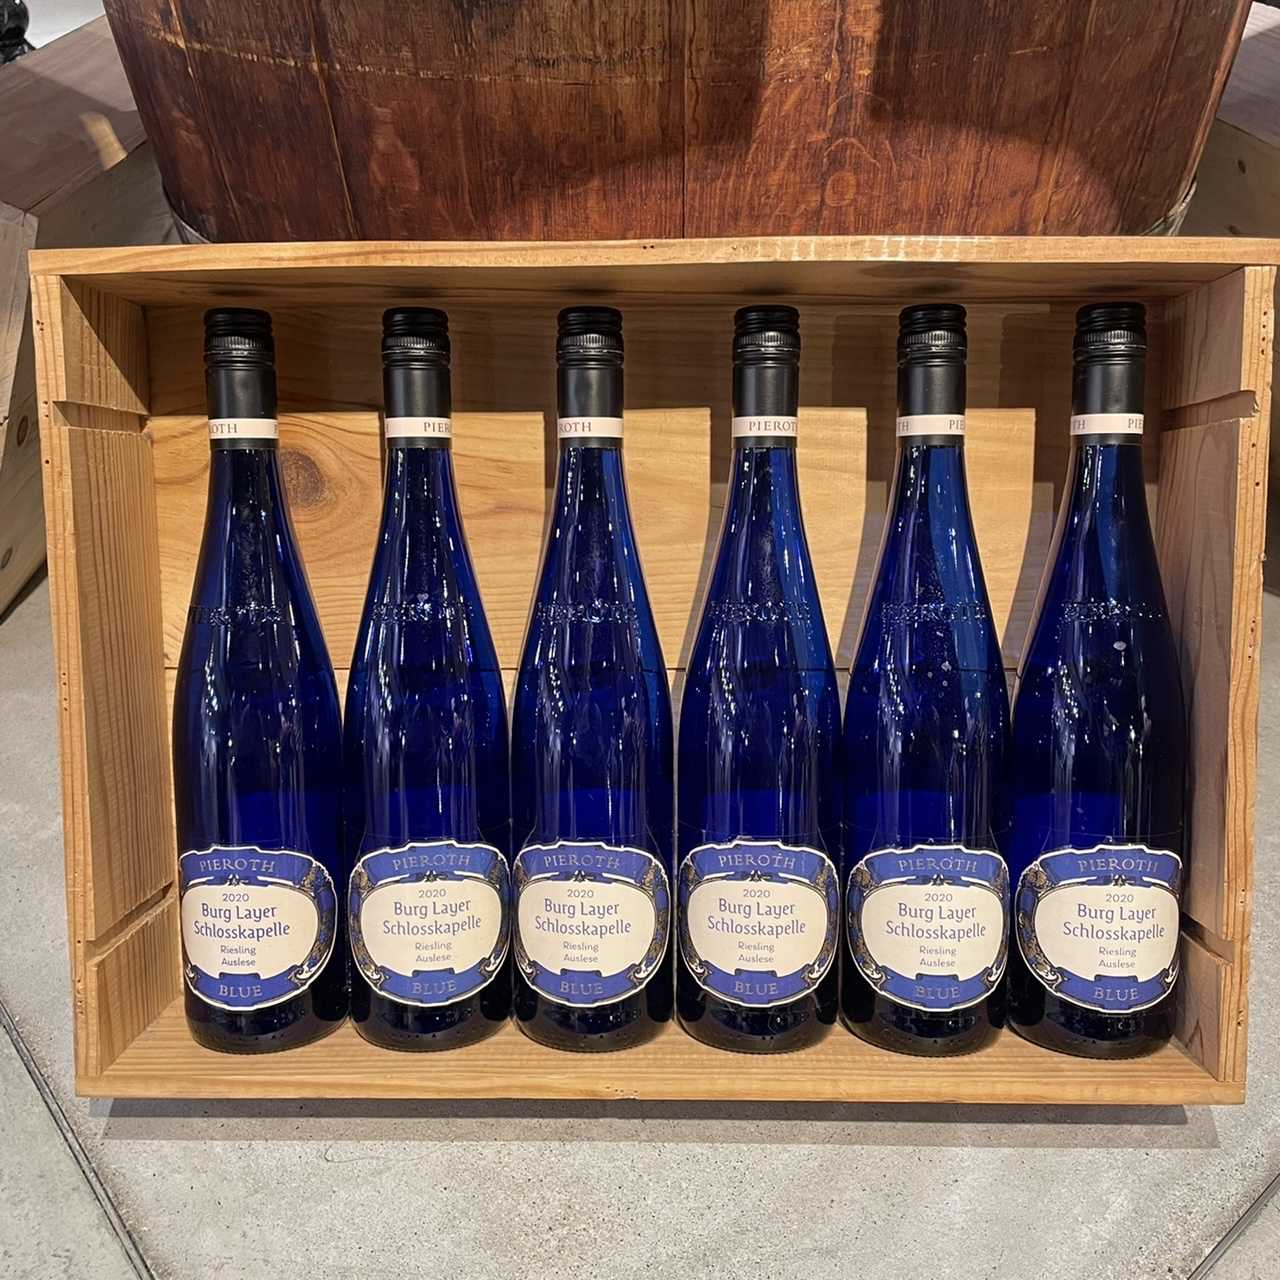 ドイツワイン シュペートレーゼ / アウスレーゼ「ピーロート・ブルー 